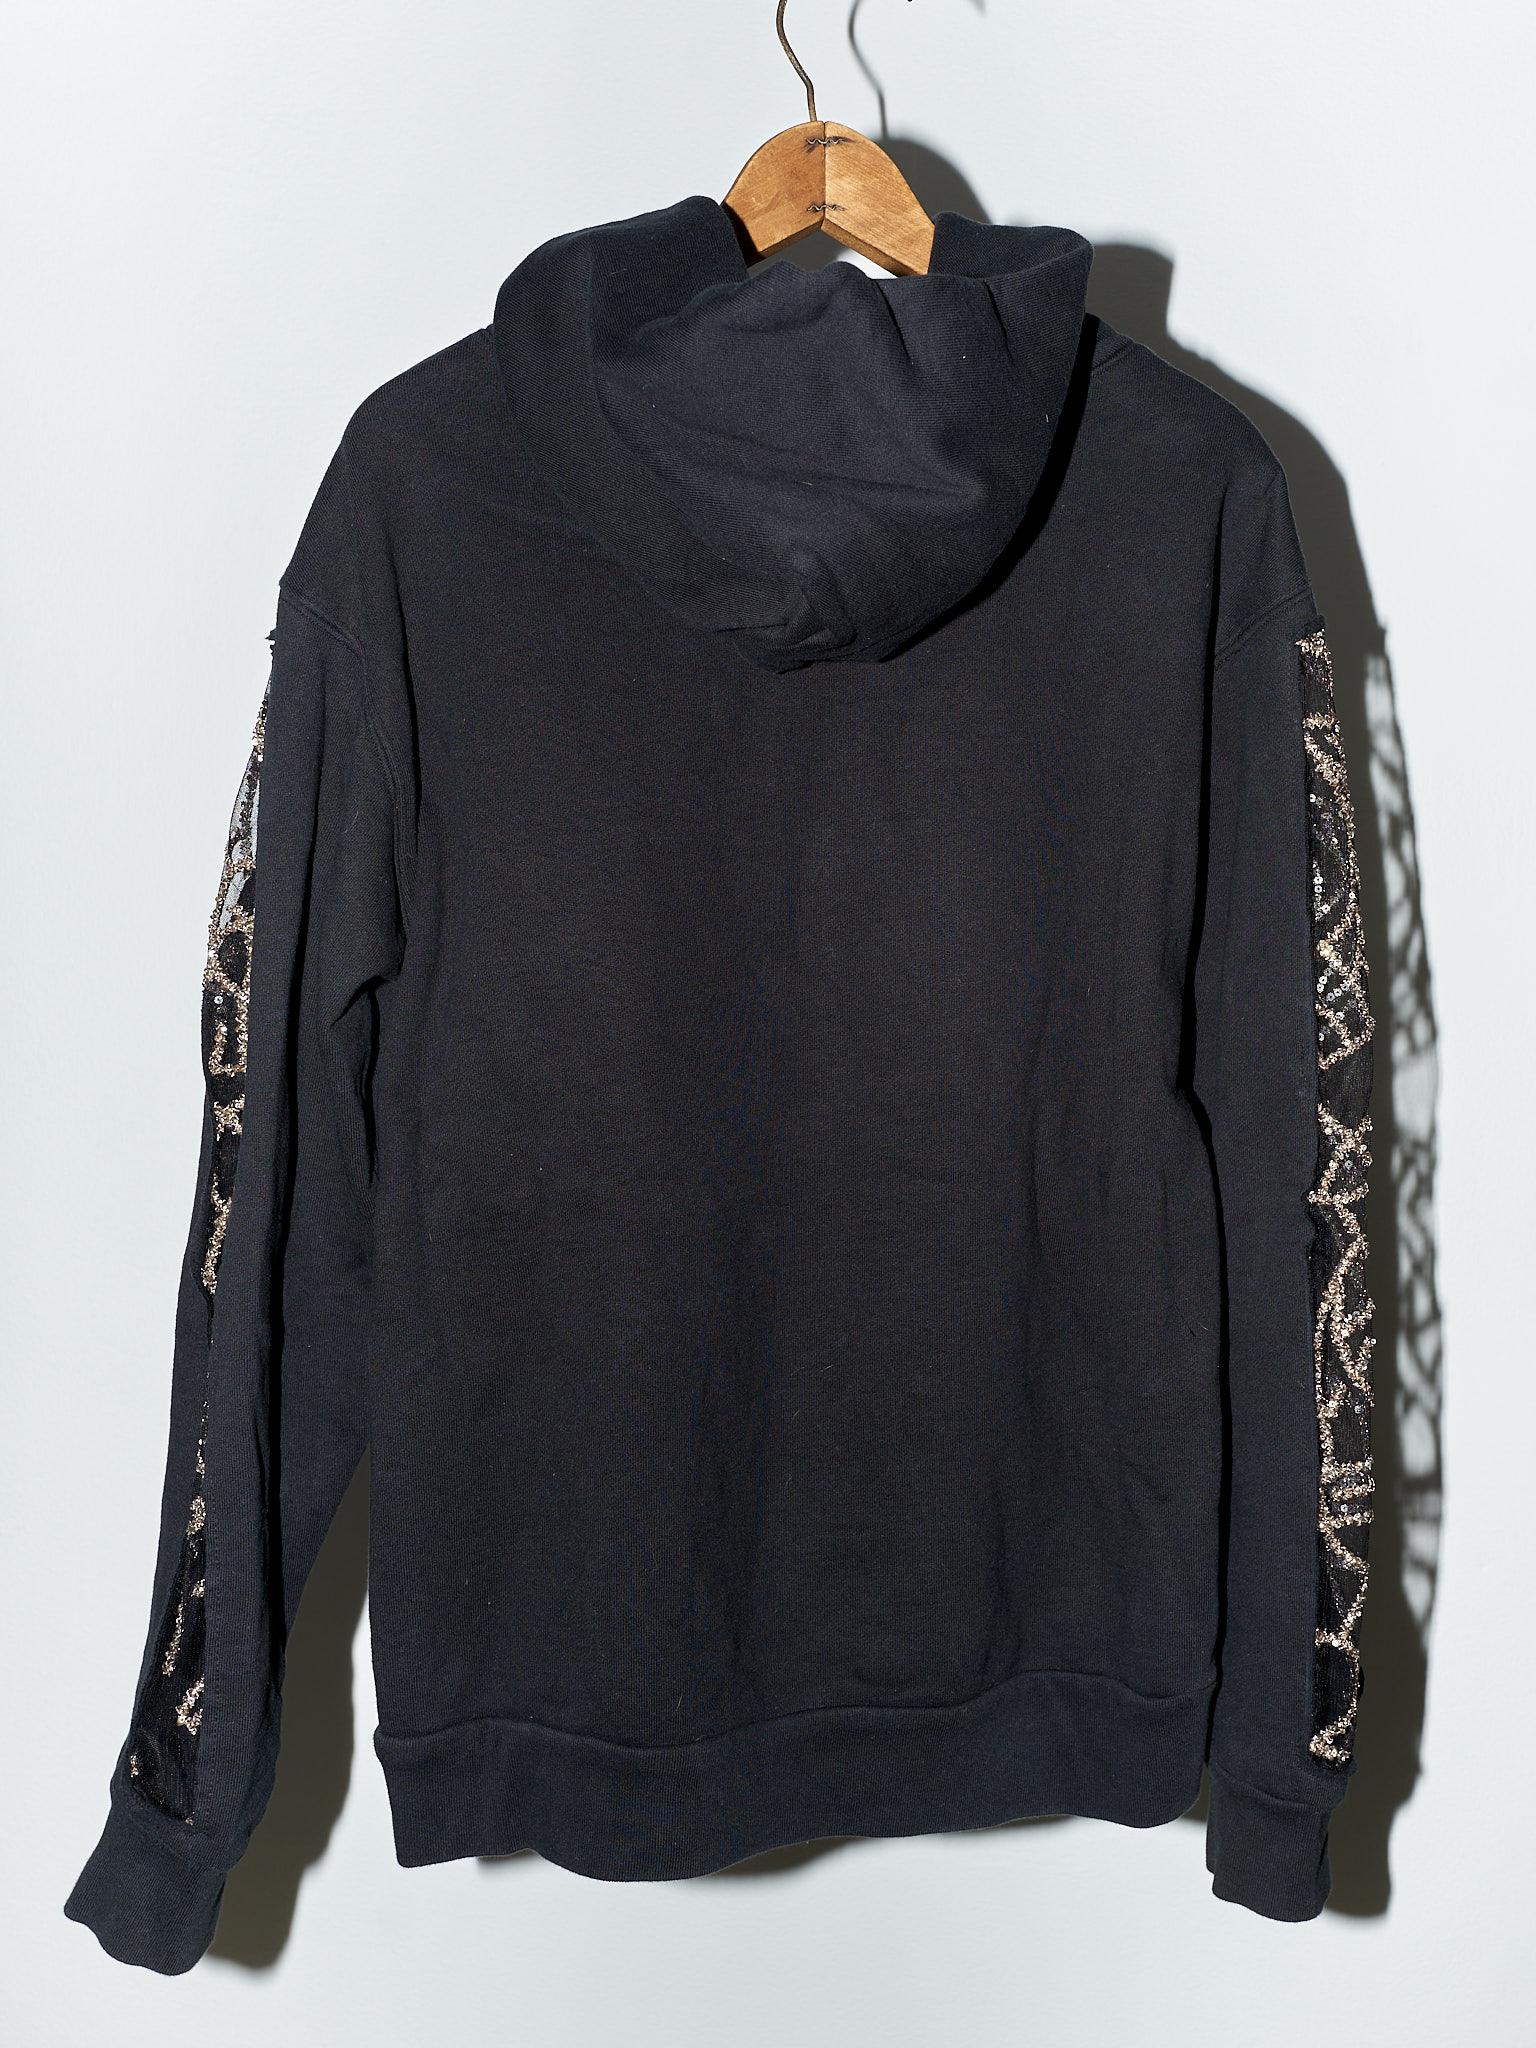 Black Hoodie Sweatshirt Transparent Sheer Mesh Chrystal Embroidery J Dauphin For Sale 5